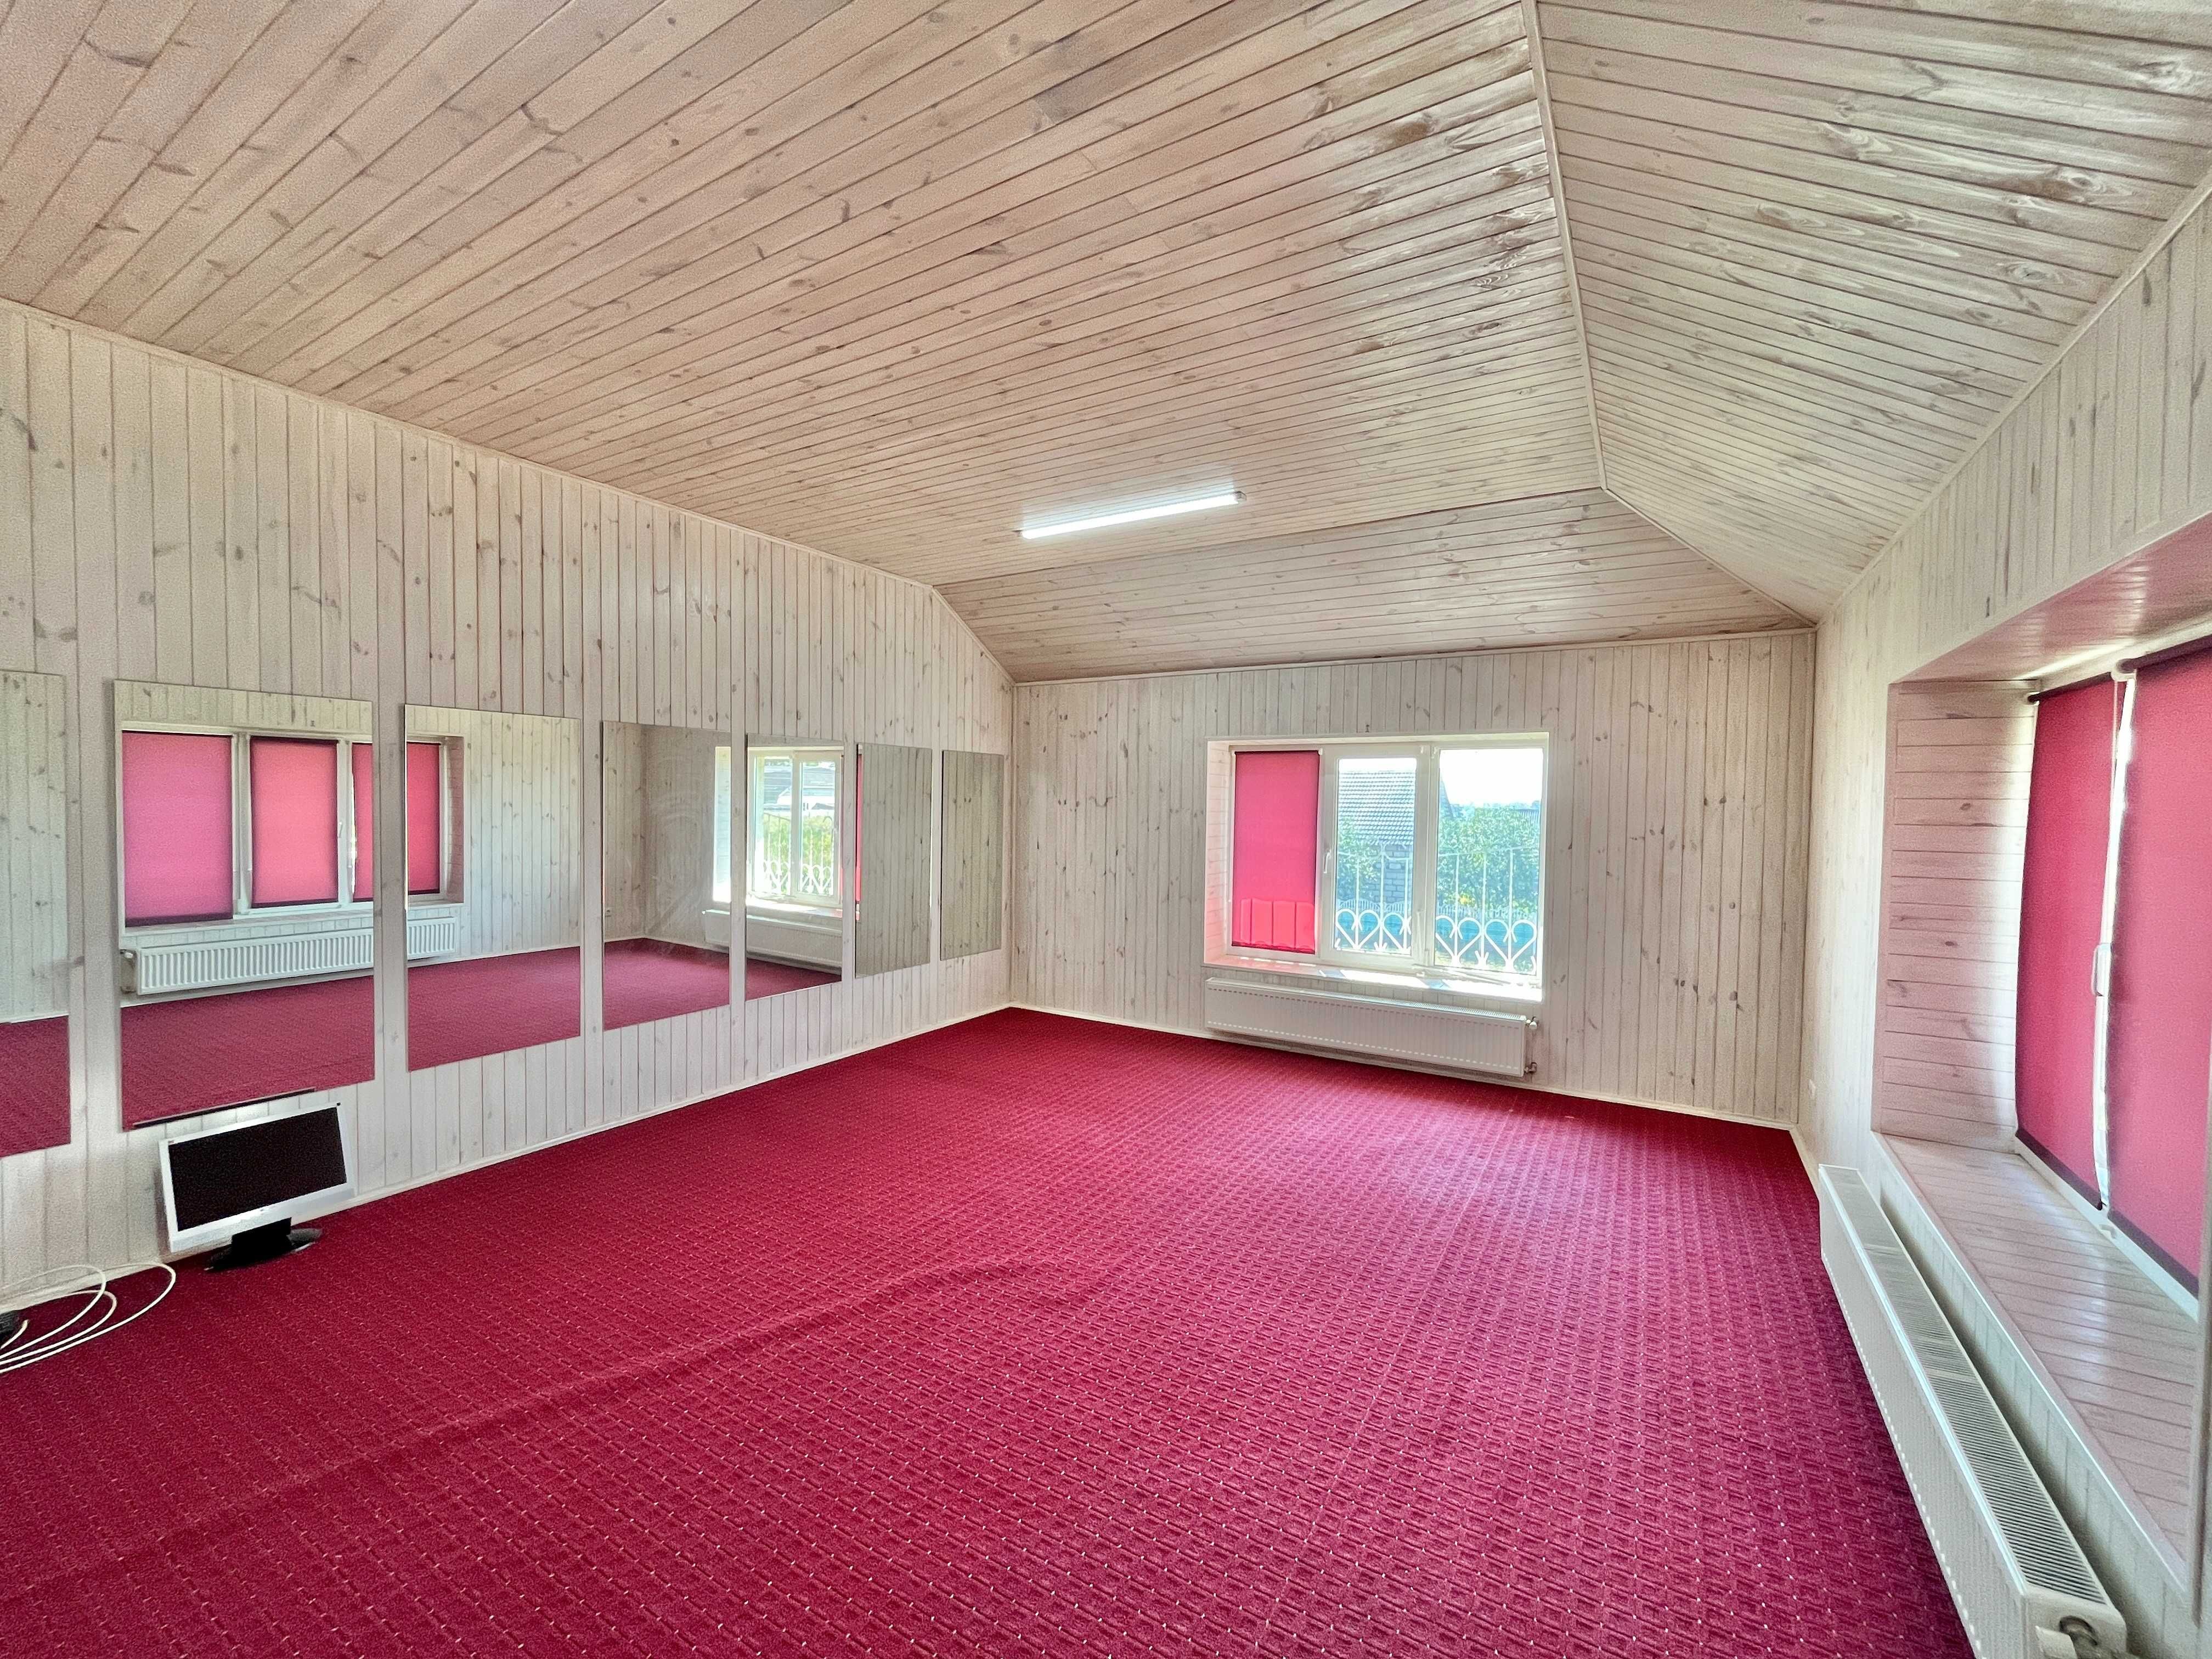 Продаж двоповерхового будинку з ремонтом в Бучанському регіоні